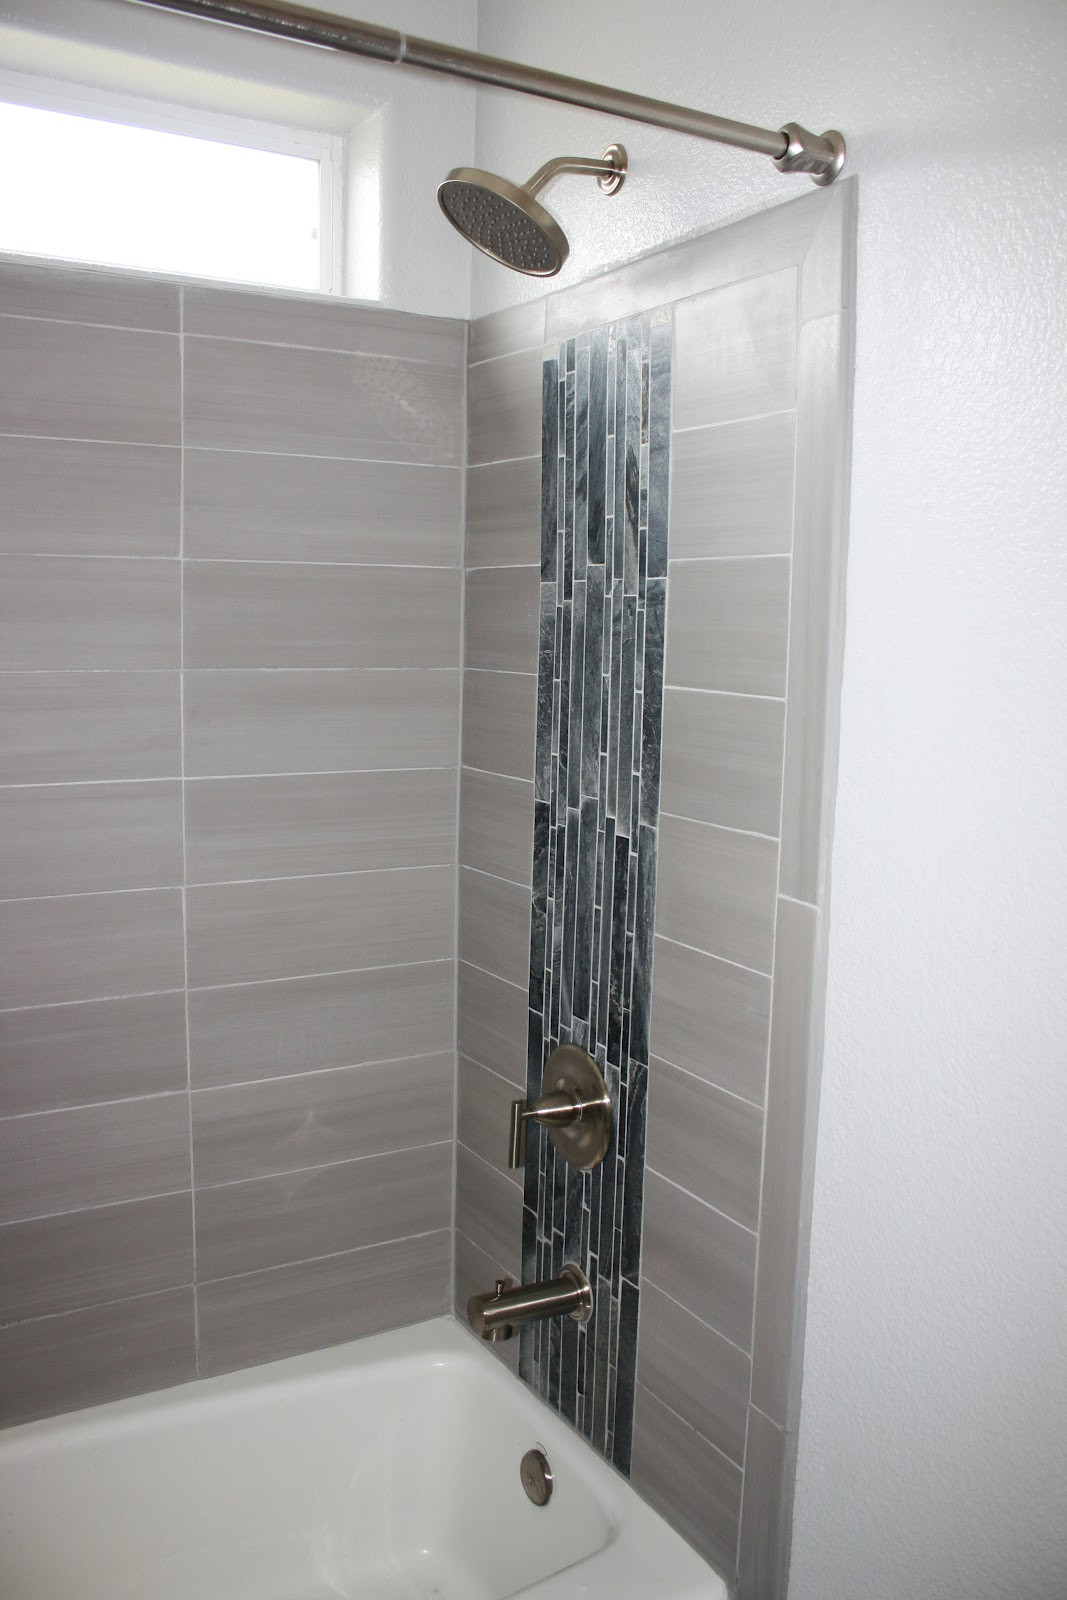 Home Depot Bathroom Shower Tile
 be slightly askew pleted bathroom